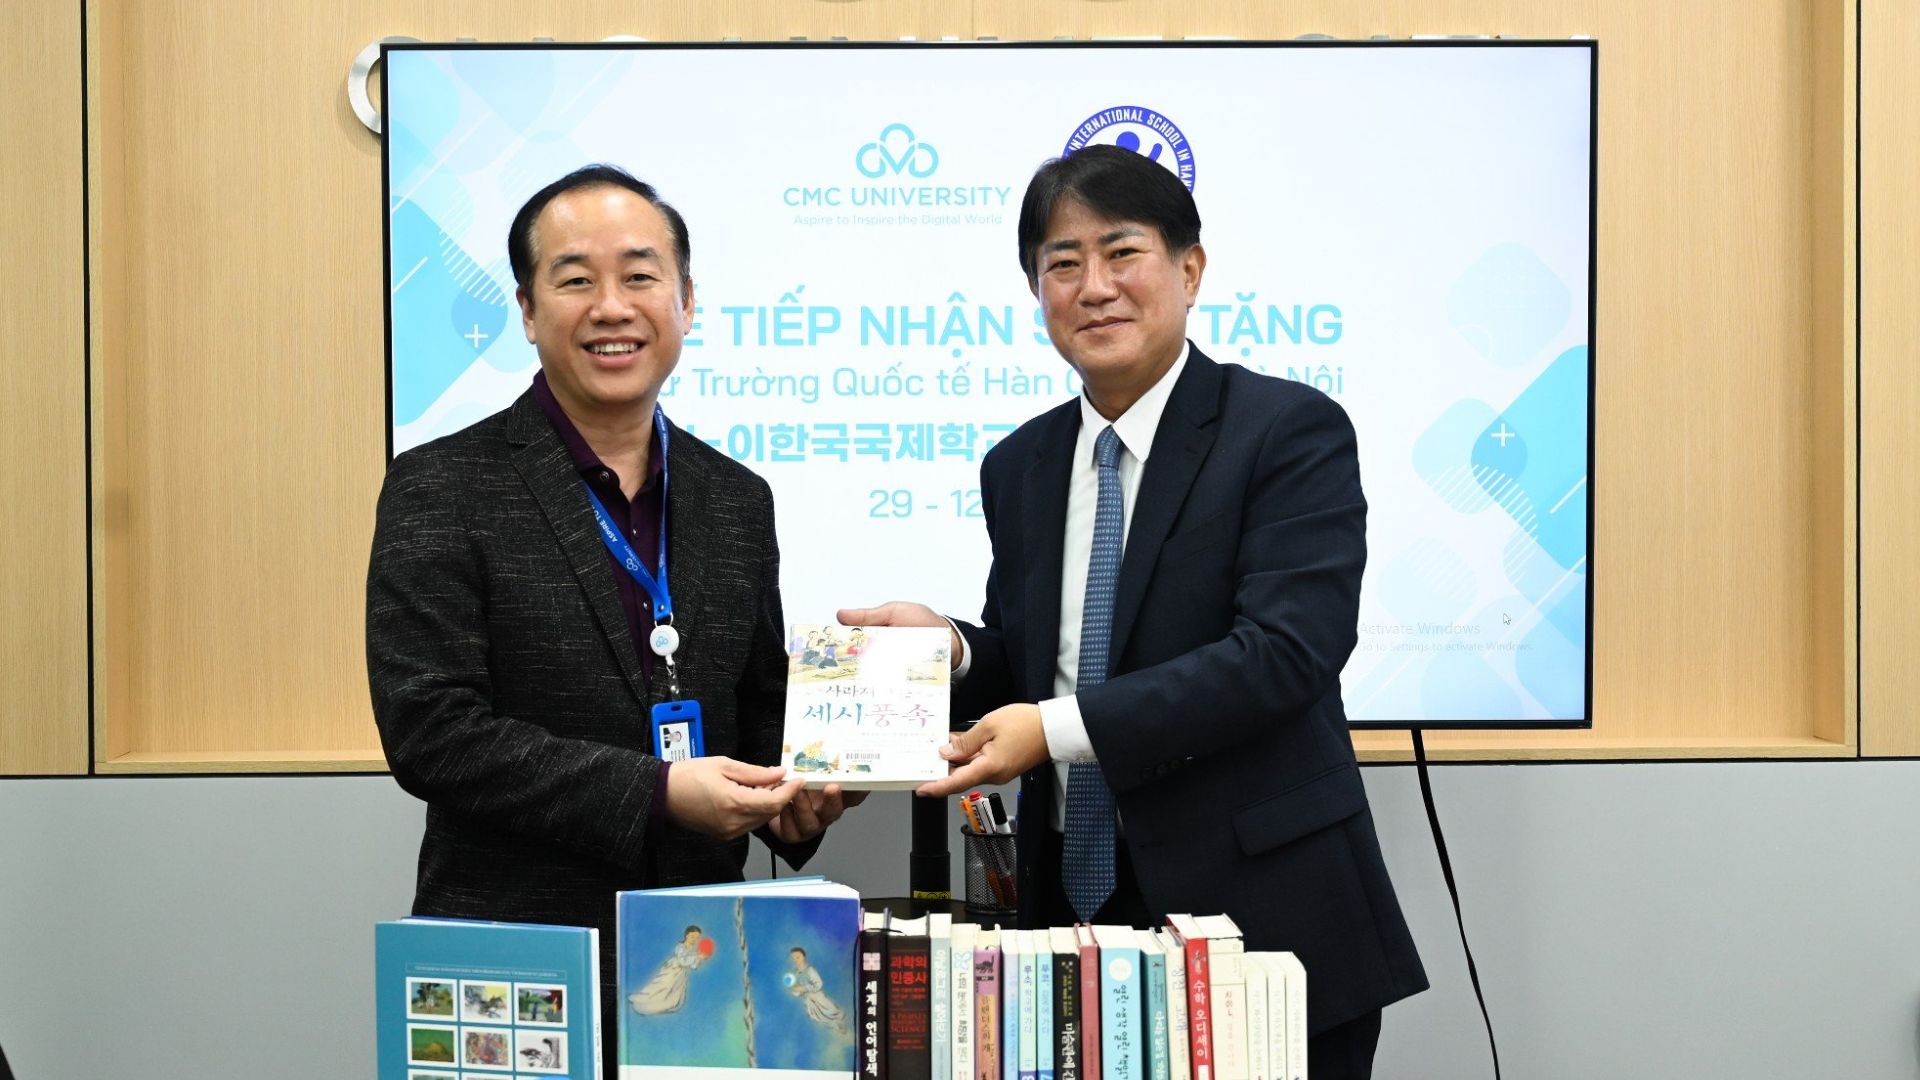 Lễ tiếp nhận sách từ Trường Quốc tế Hàn Quốc - đánh phỏm
